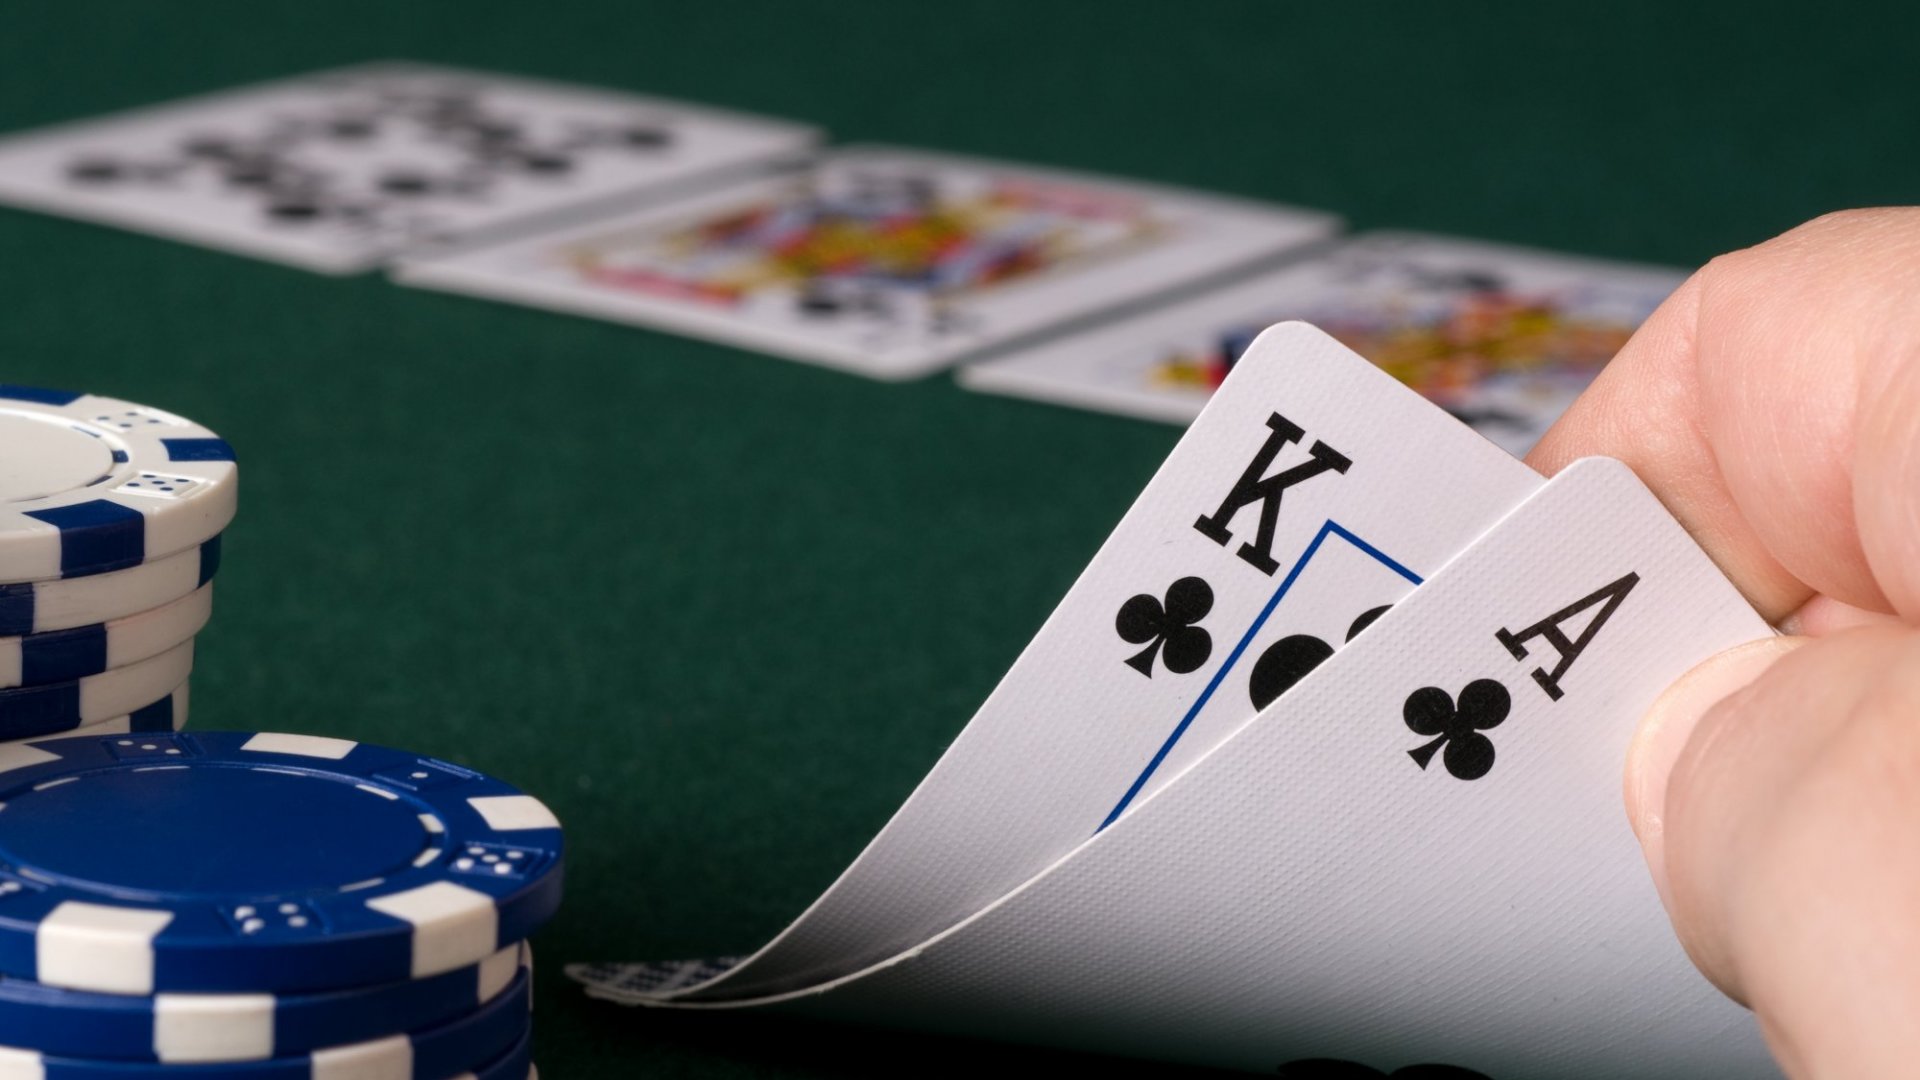 TVBet 為波蘭的 iGaming 市場提供新的現場撲克選項